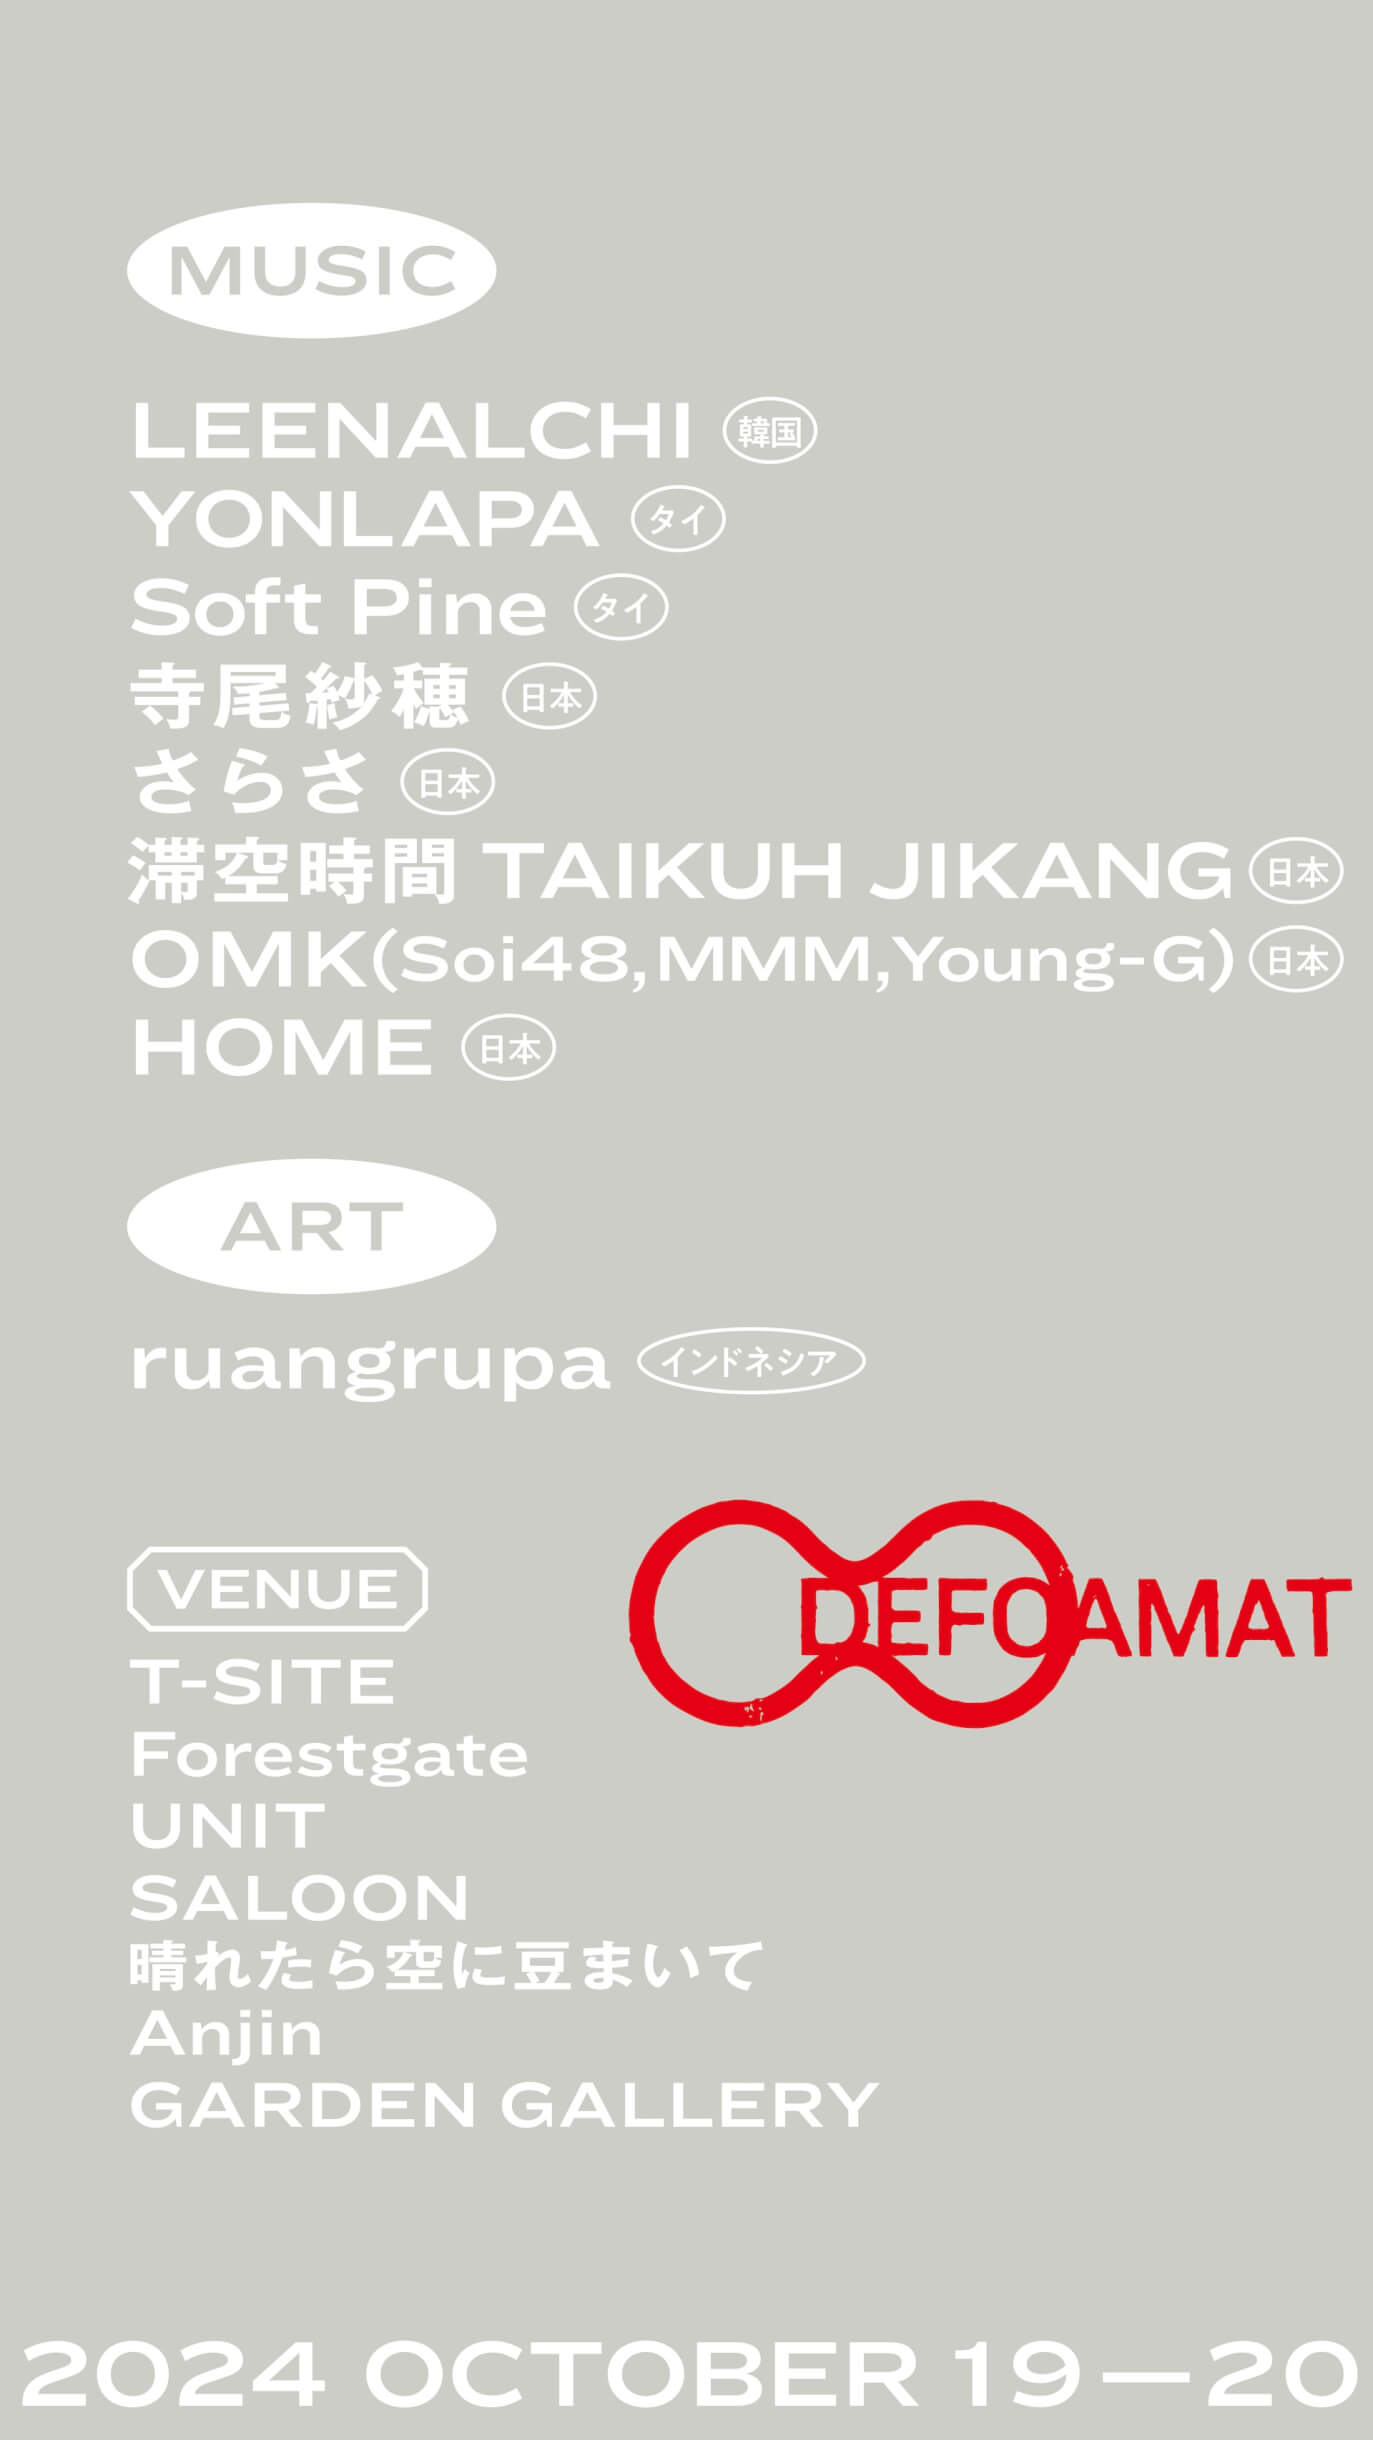 アートと音楽の都市型フェスティバル＜DEFOAMAT＞代官山の複数会場で開催｜LEENALCHI（韓国）やYONLAPA（タイ）の来日に加え、さらさ、寺尾紗穂、HOME、滞空時間らの出演が決定 music240801-defoamat9